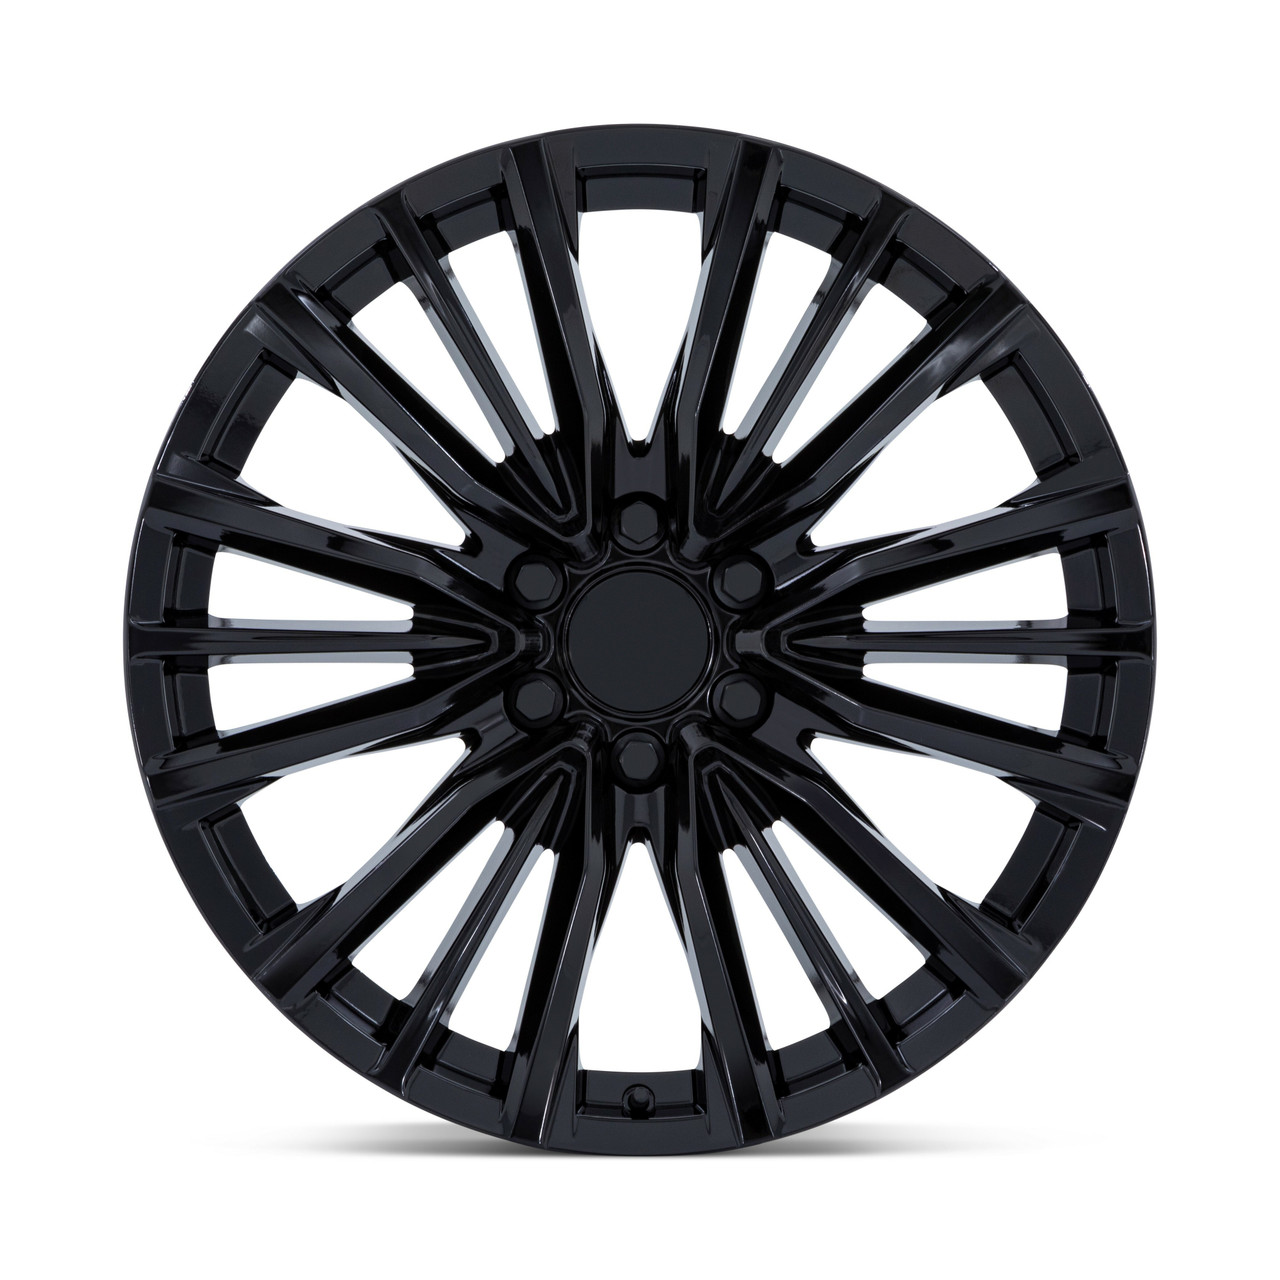 22" Performance Replicas PR223 Gloss Black 22x9 Wheel 6x5.5 28mm Rim